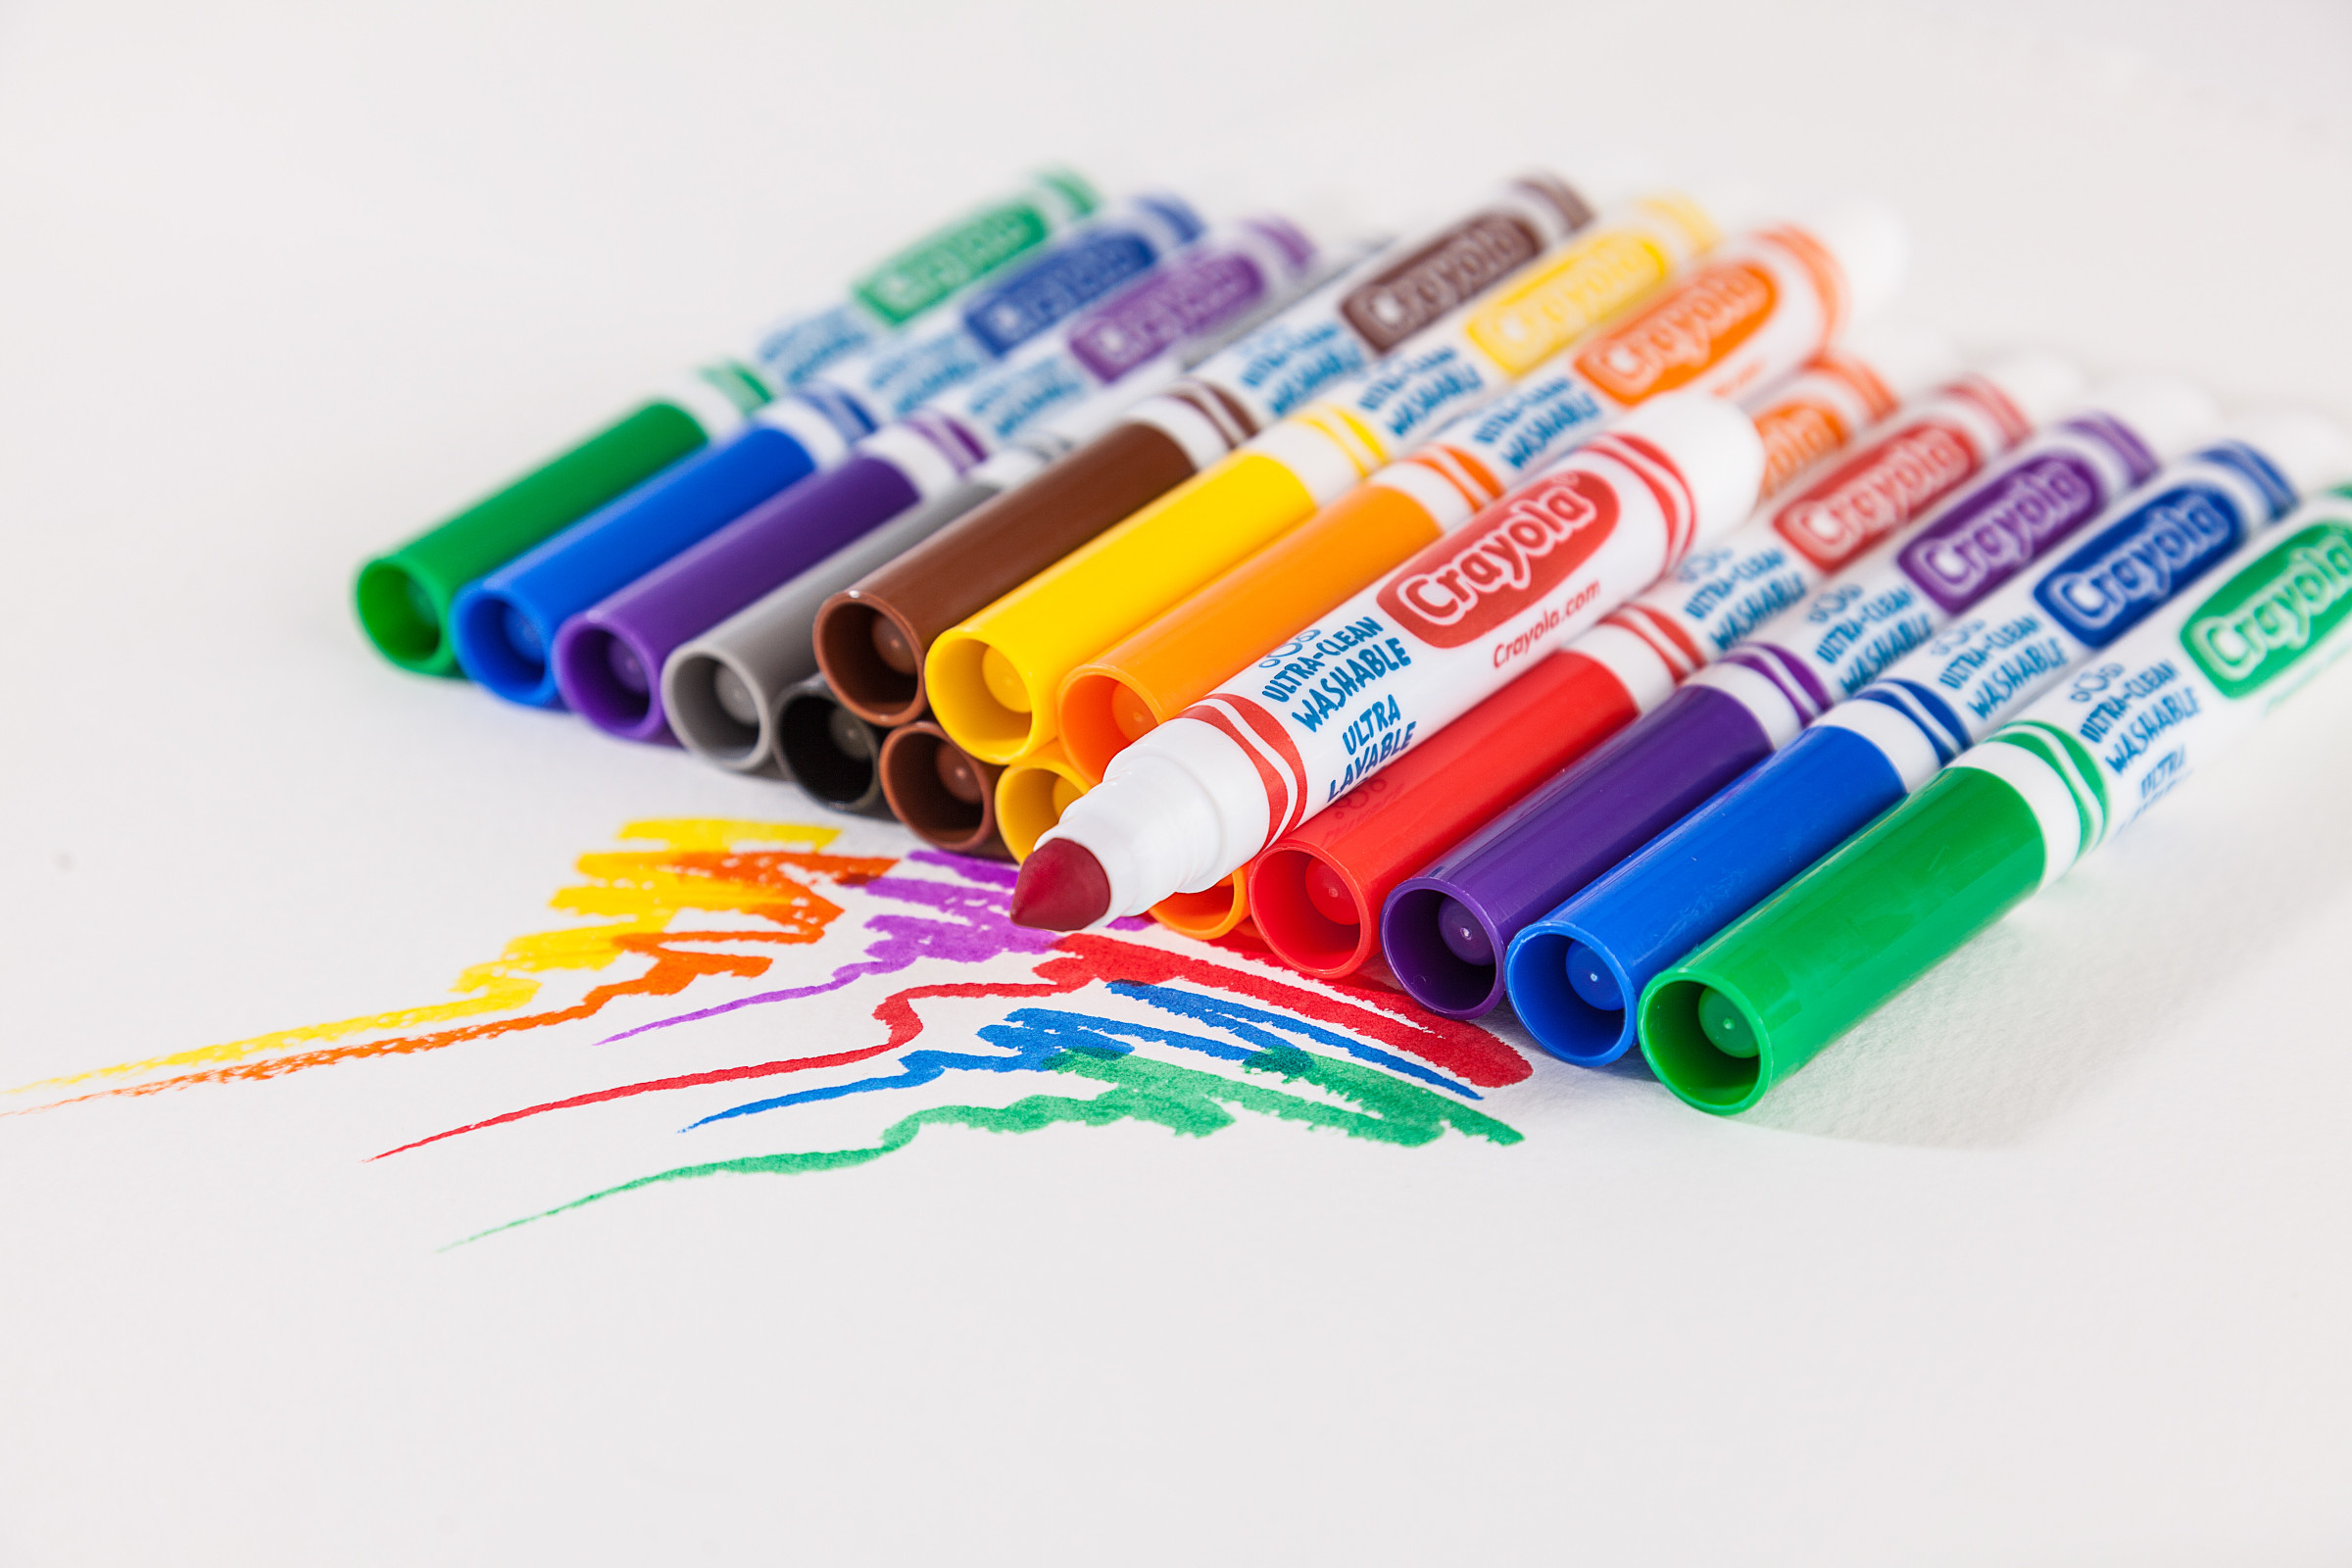 Crayola Fine Line Markers Classpack, 200 Count